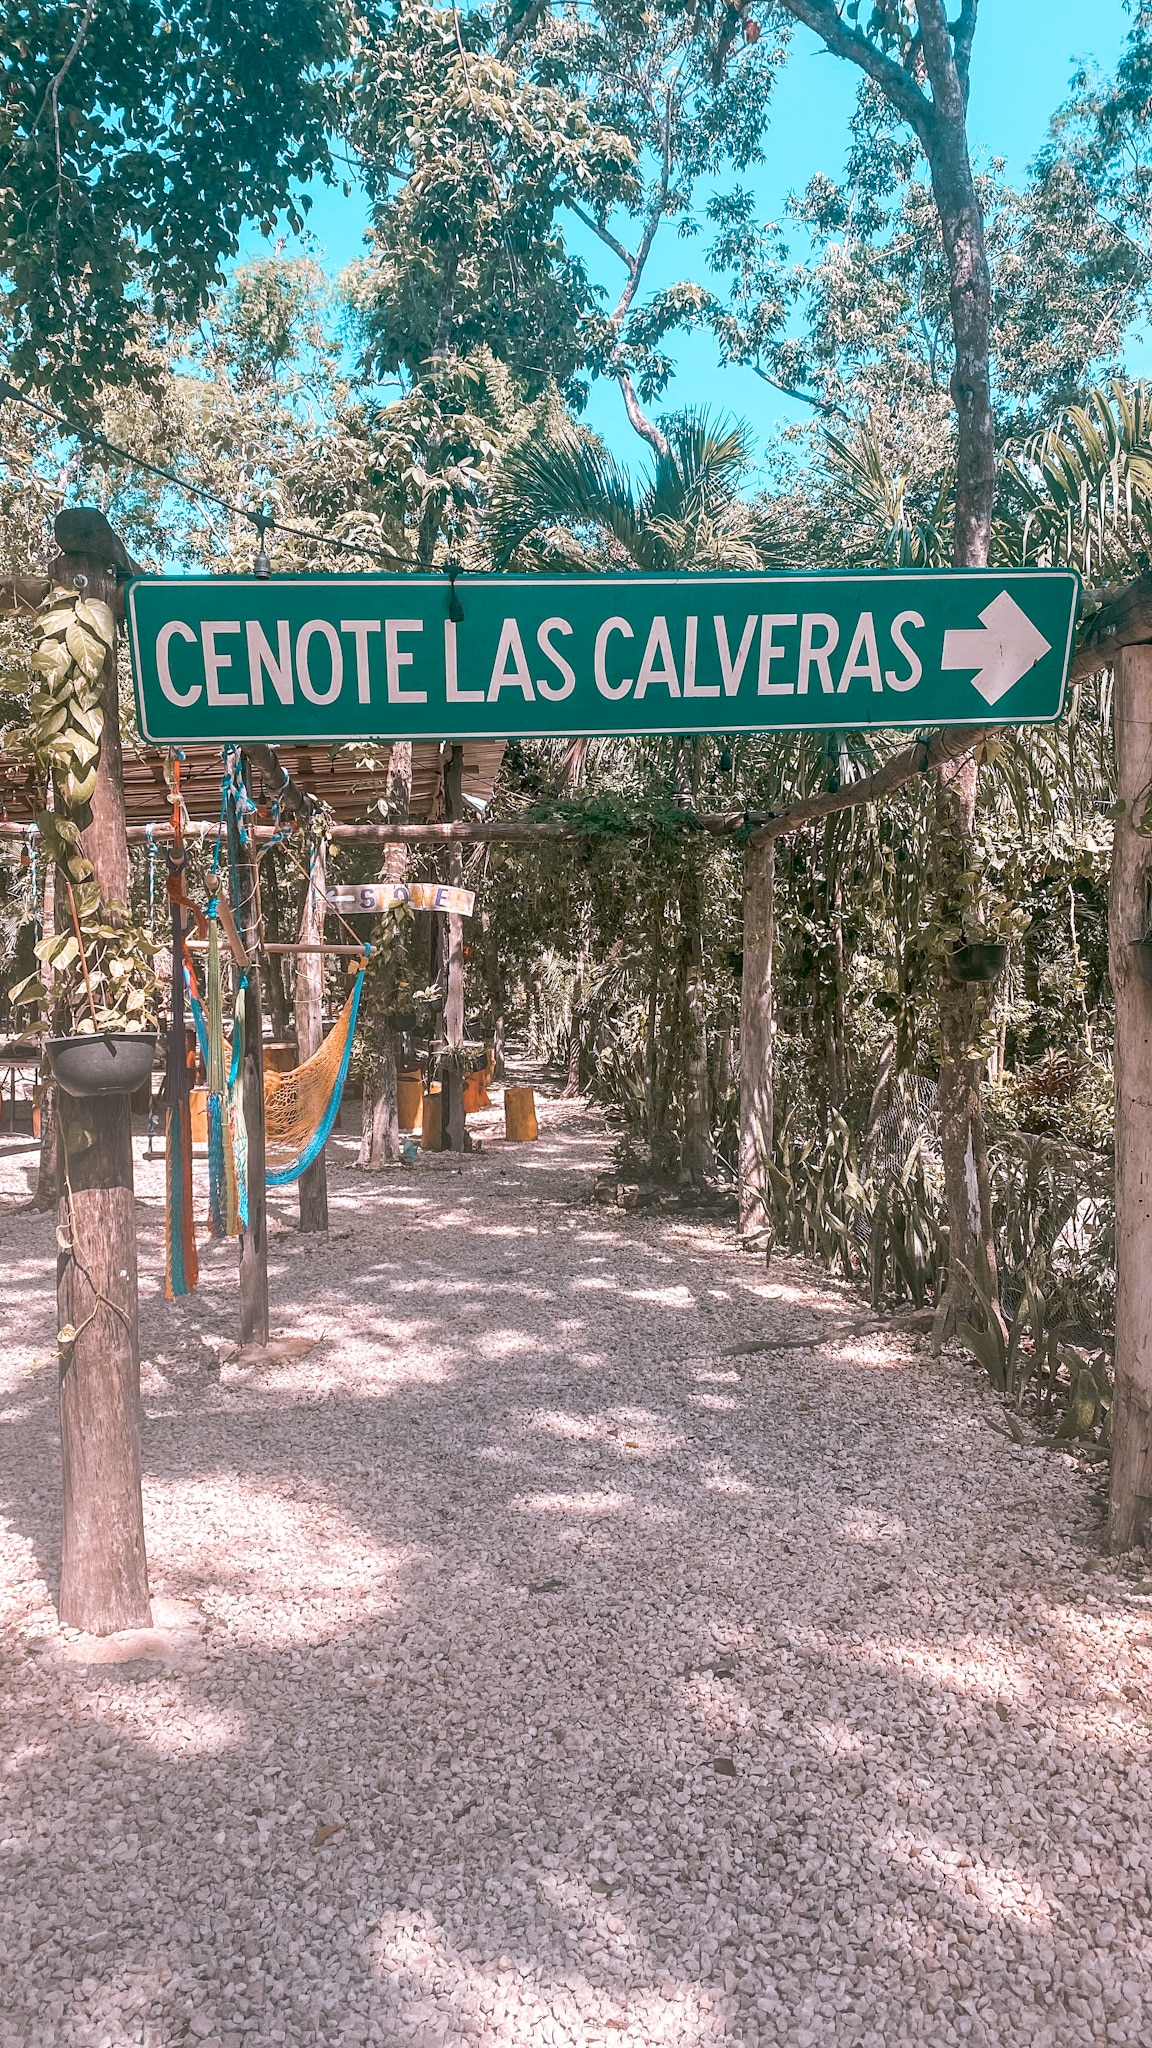 Cenote Las calveras Sign